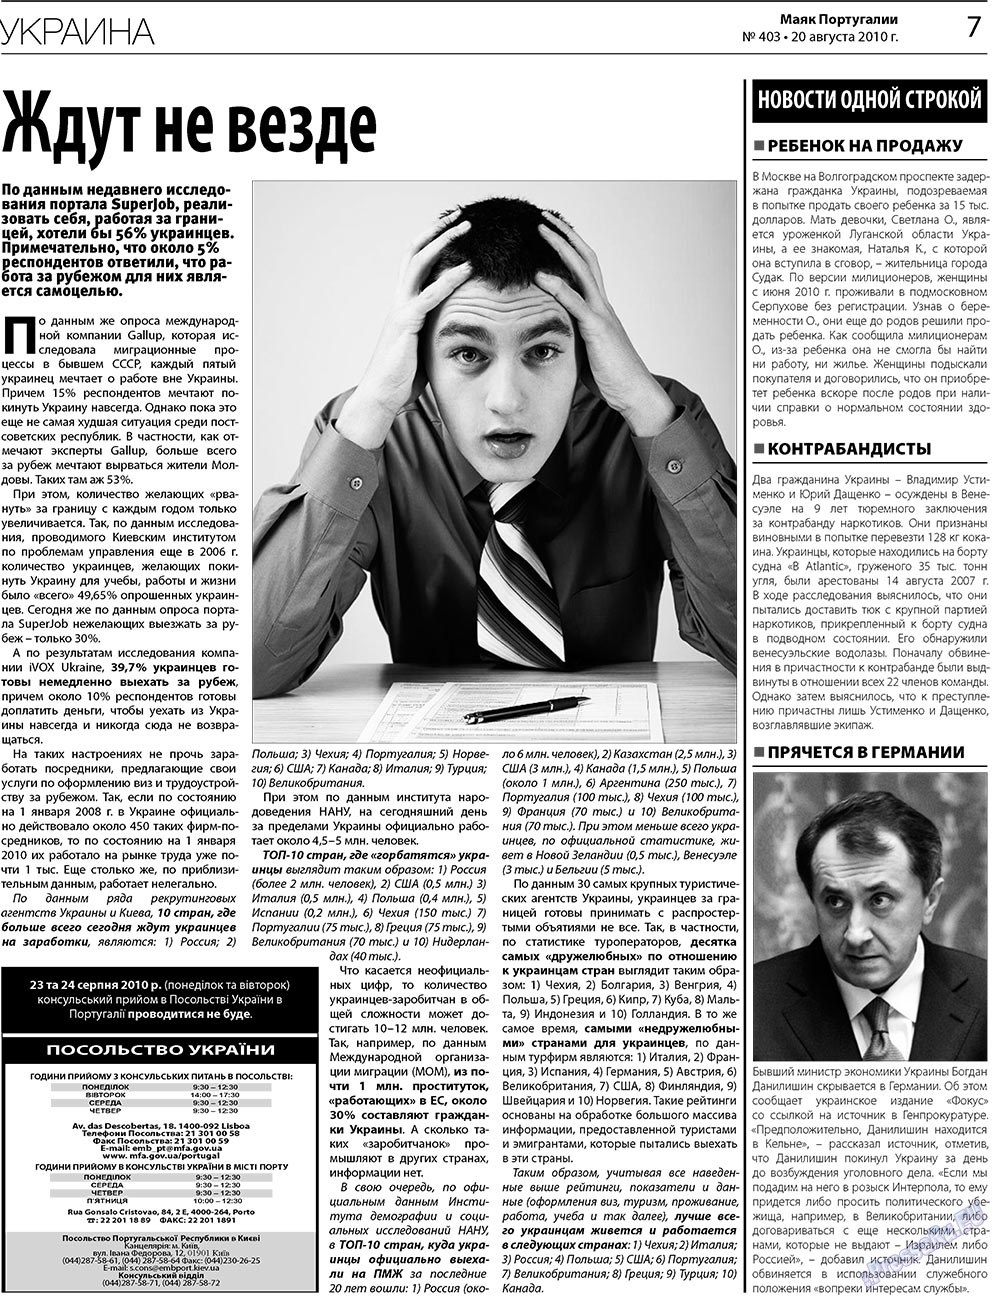 Маяк Португалии (газета). 2010 год, номер 403, стр. 7